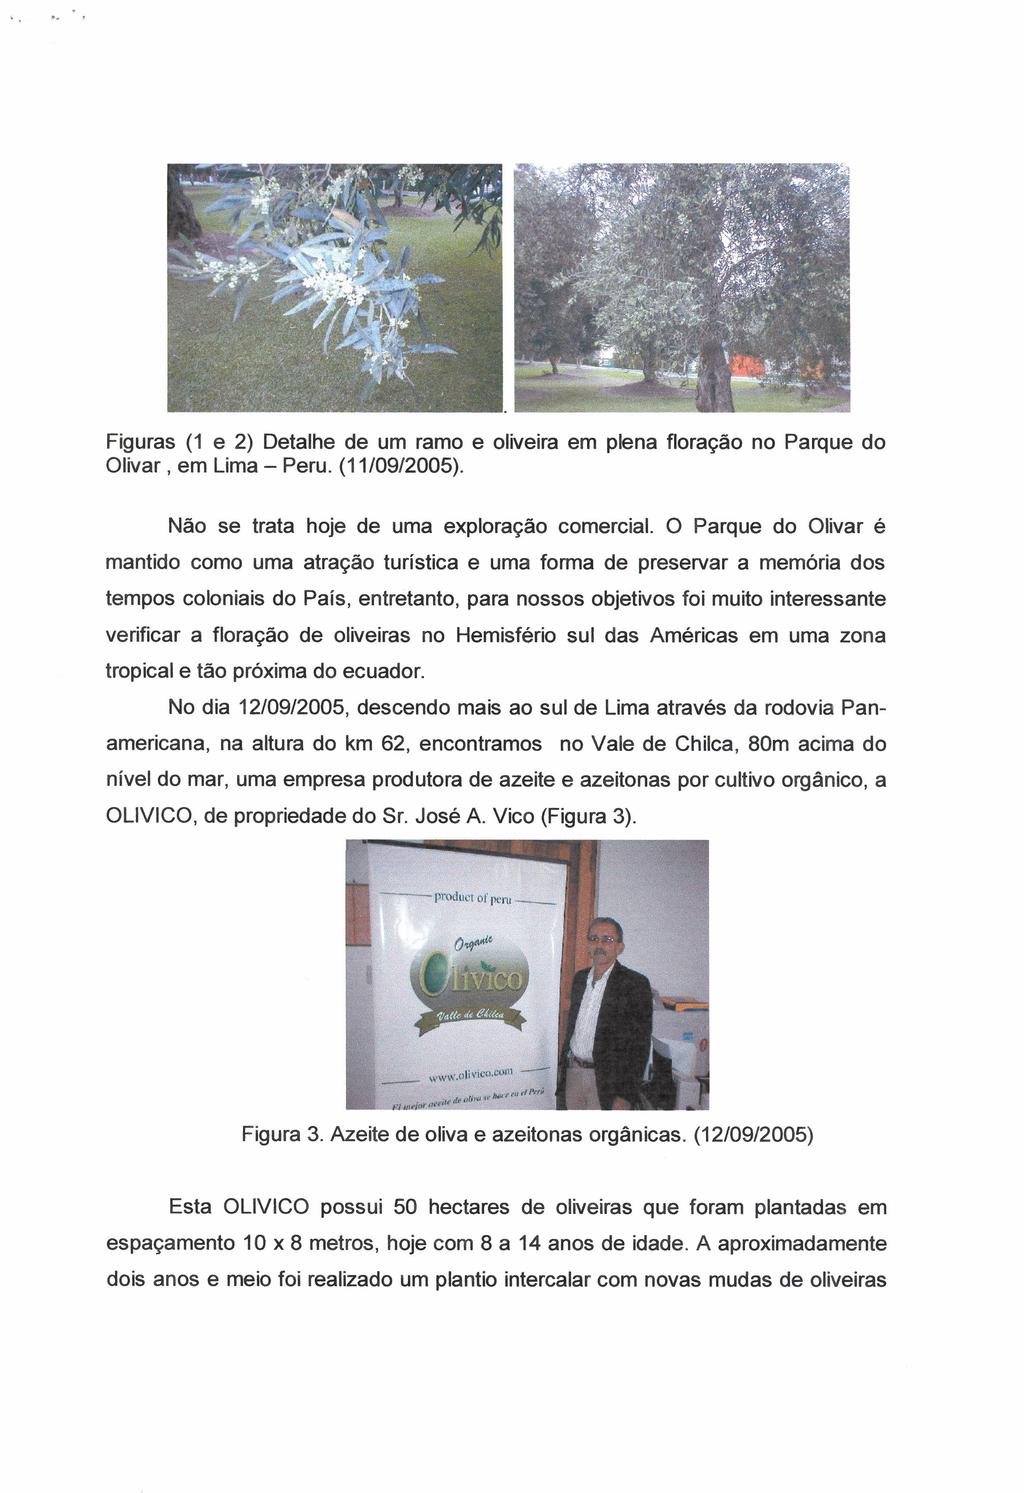 Figuras (1 e 2) Detalhe de um ramo e oliveira em plena f1oração no Parque do Olivar, em Lima - Peru. (11/09/2005). Não se trata hoje de uma exploração comercial.